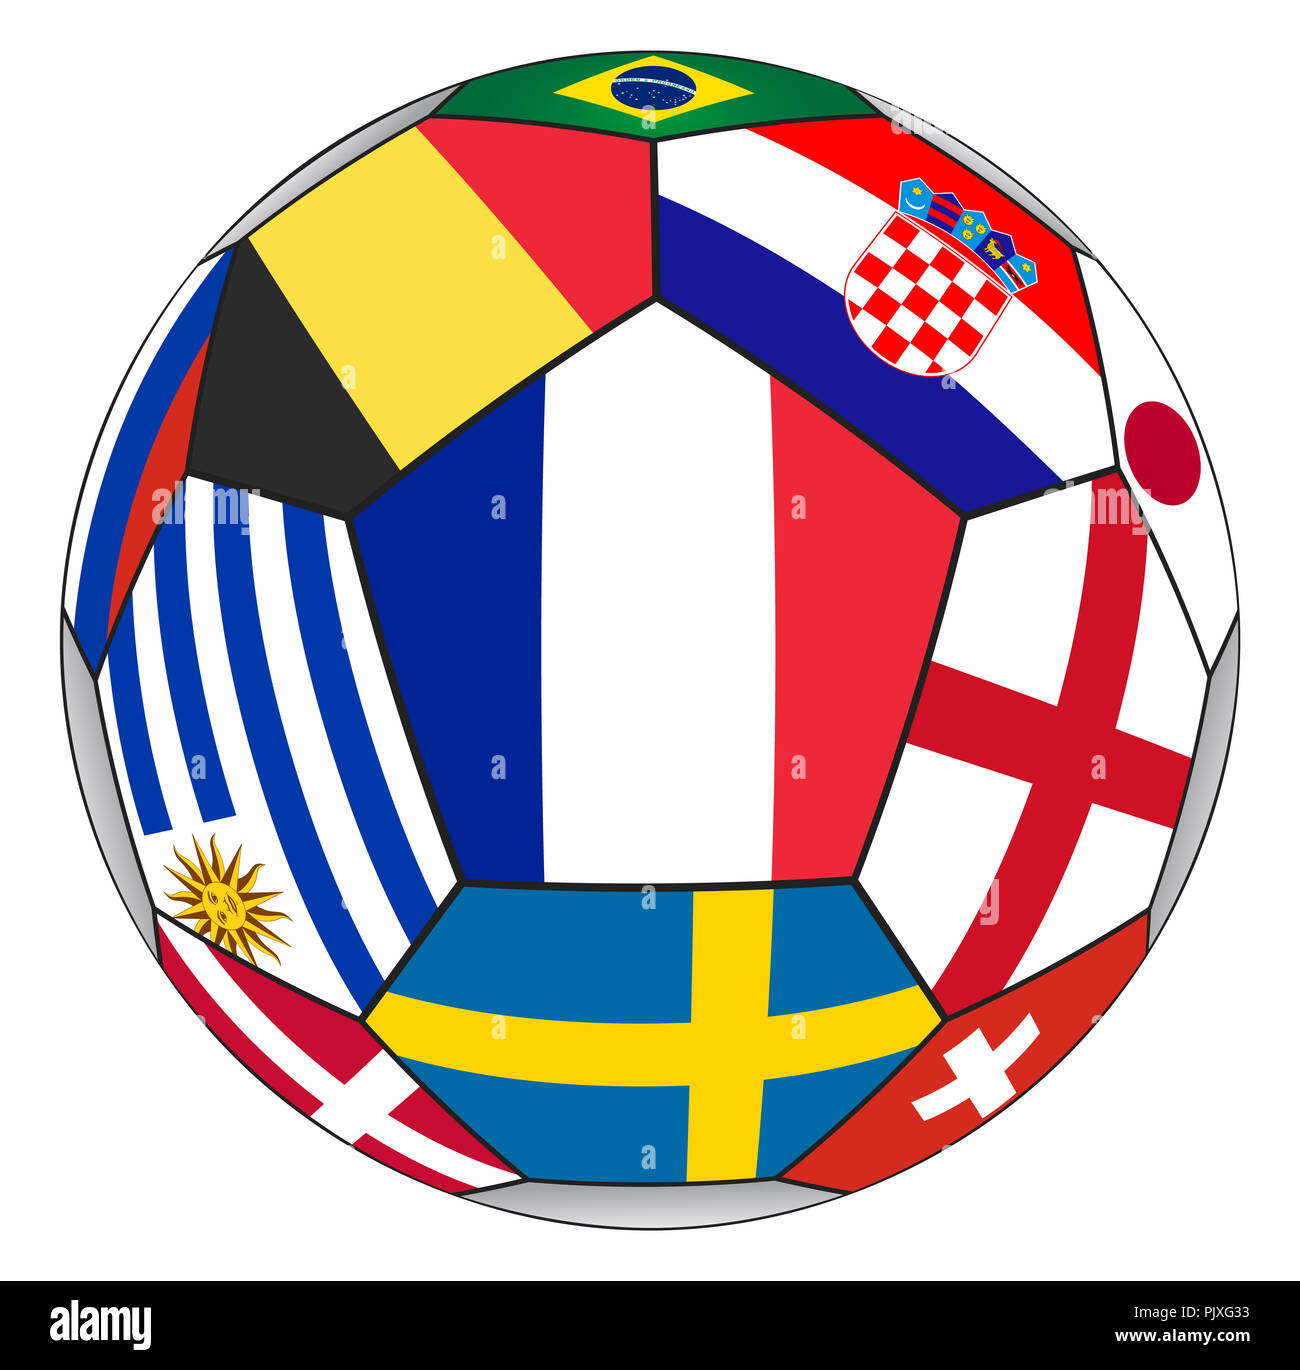 Pallone da calcio con vari flag isolato su sfondo bianco - campione del mondo Foto Stock